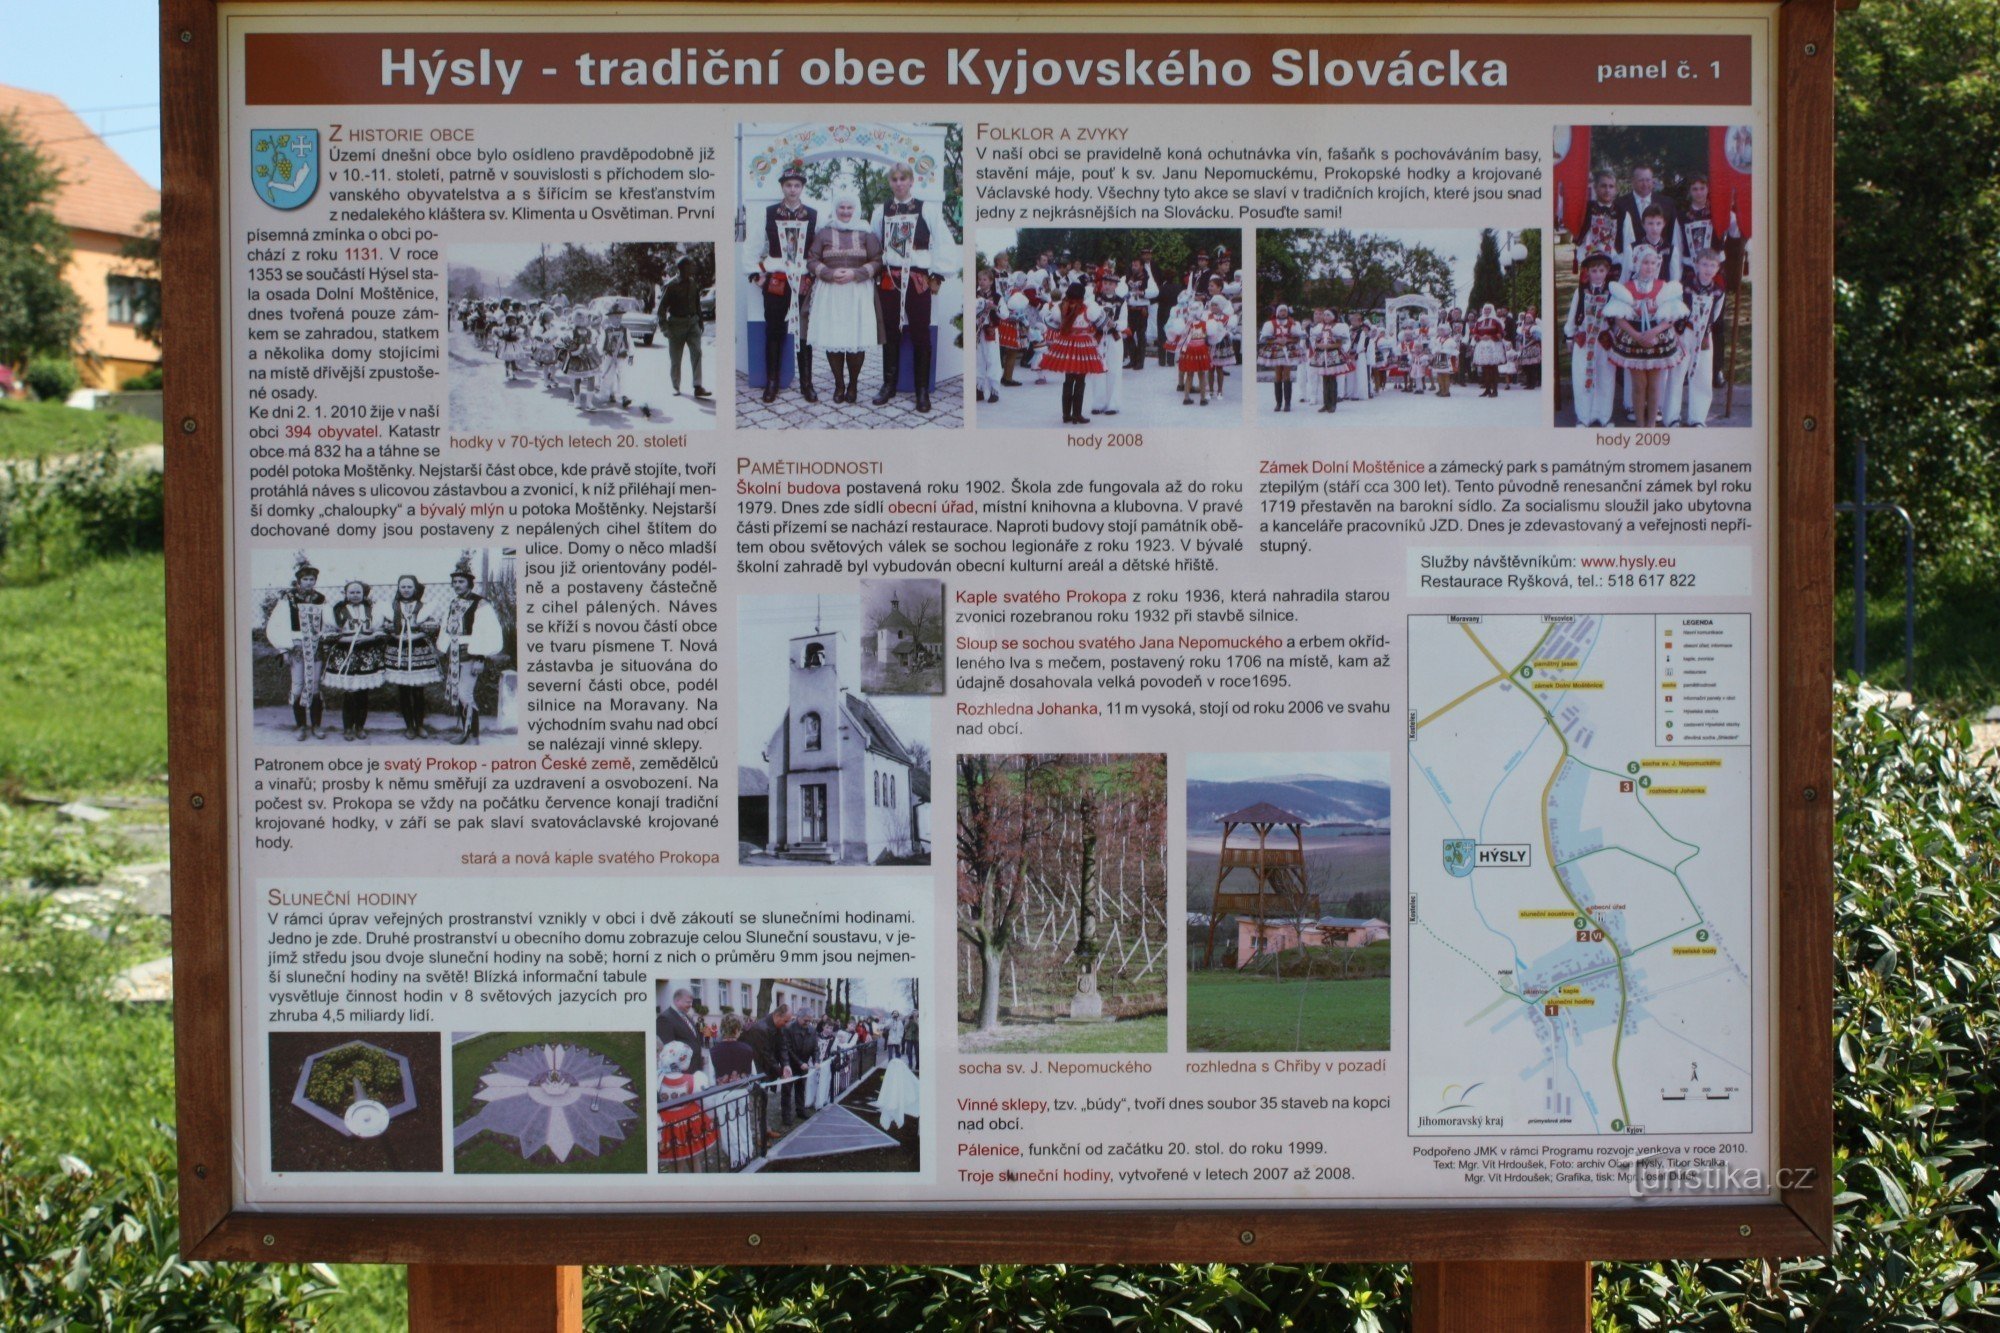 Hýsly, a interessante vila turística de Slovácka